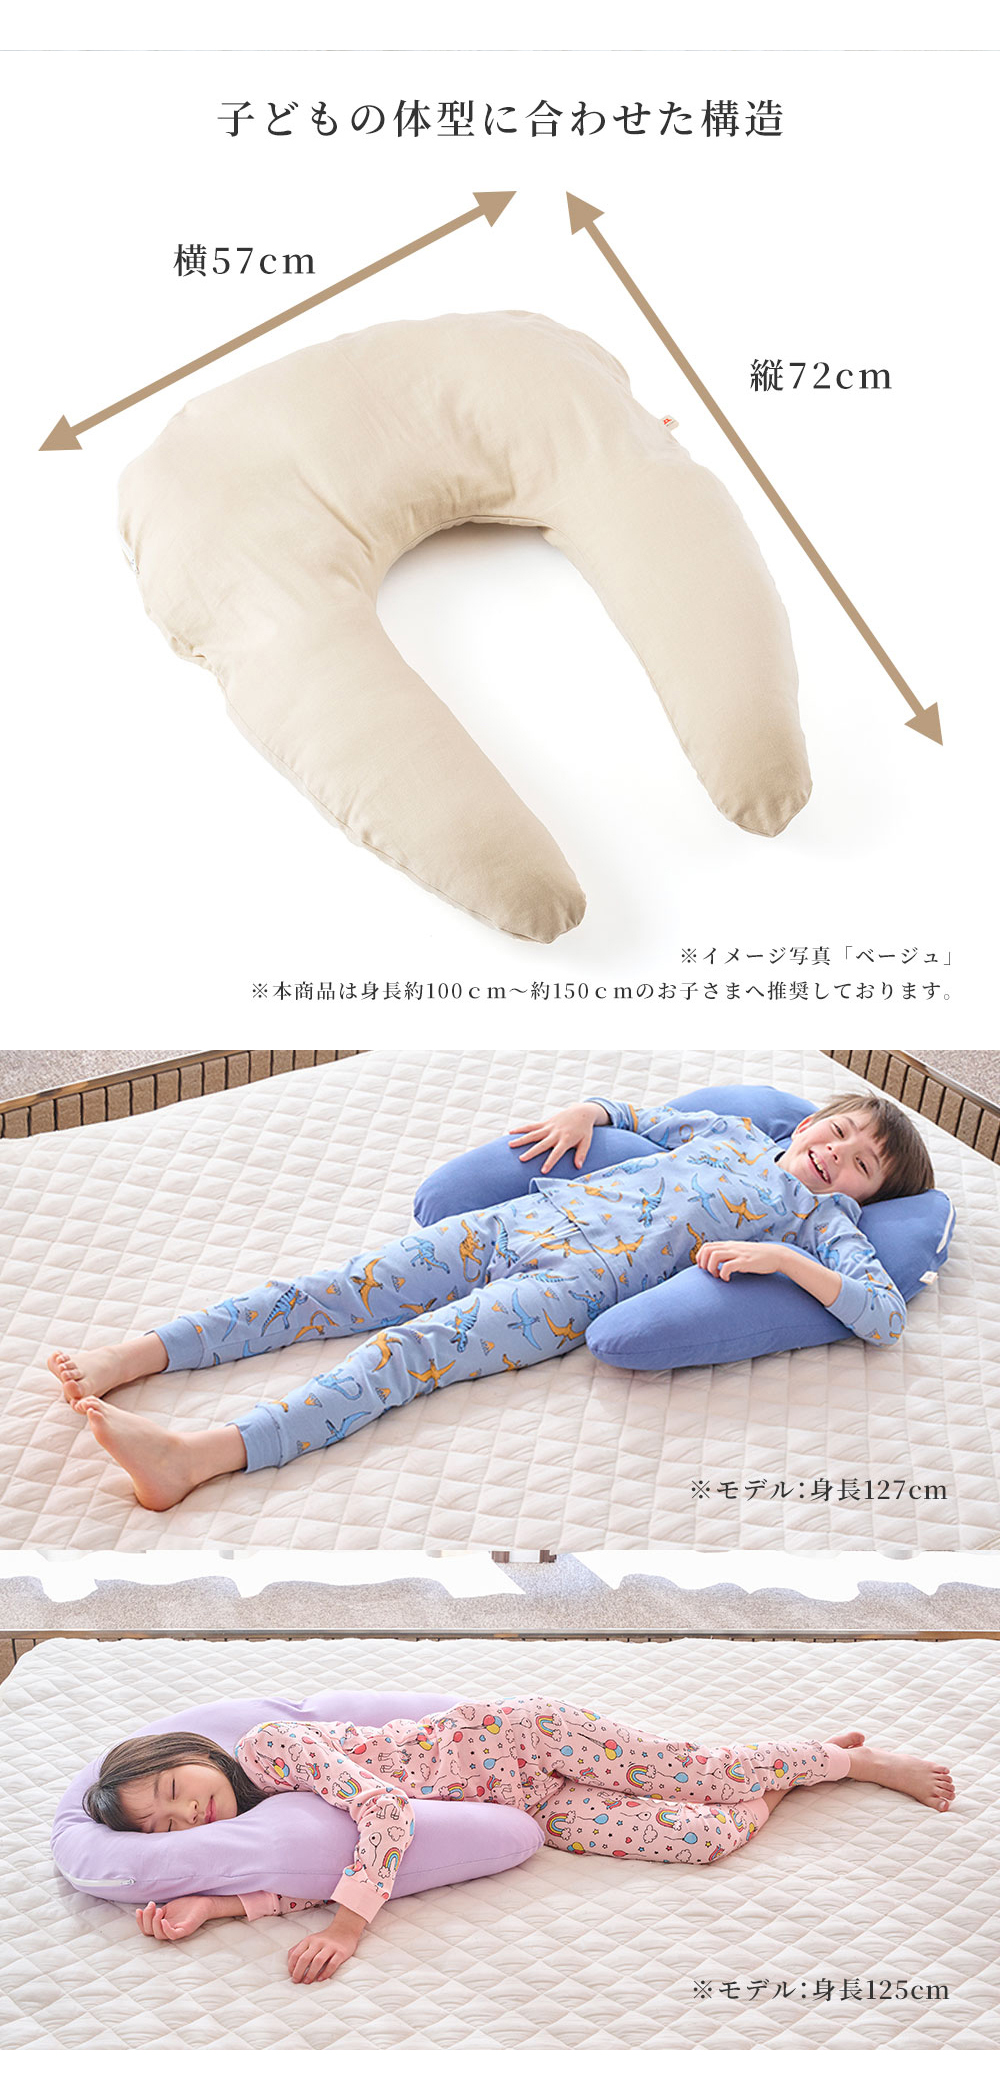 01.重力による腕の重さ　02.寝具と枕の僅かな隙間